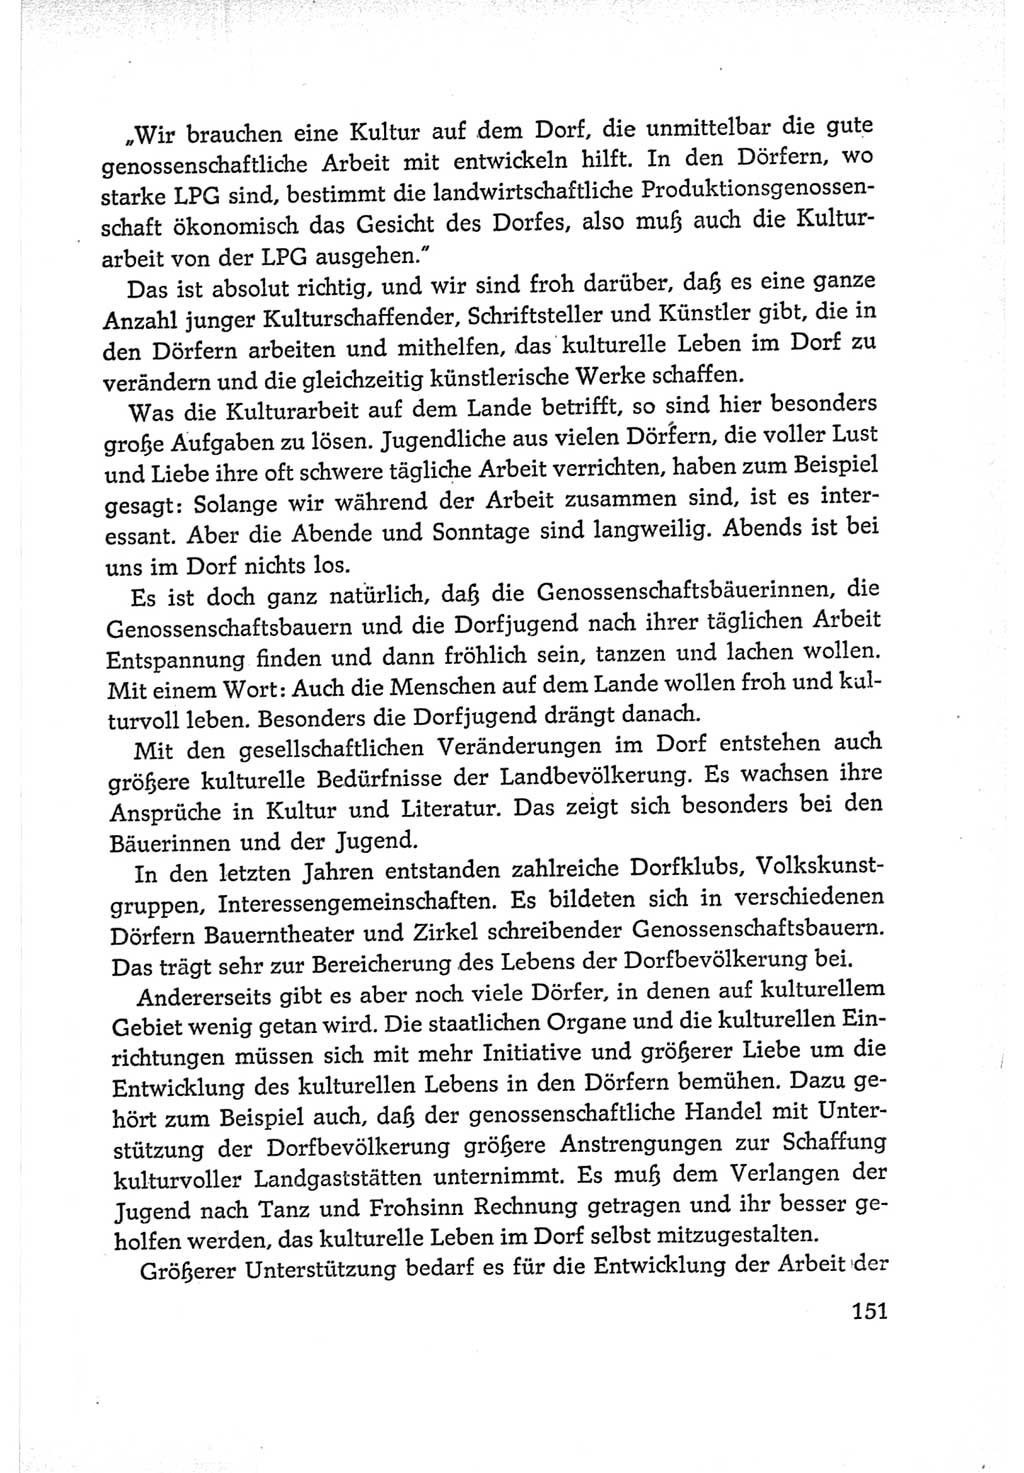 Protokoll der Verhandlungen des Ⅵ. Parteitages der Sozialistischen Einheitspartei Deutschlands (SED) [Deutsche Demokratische Republik (DDR)] 1963, Band Ⅰ, Seite 151 (Prot. Verh. Ⅵ. PT SED DDR 1963, Bd. Ⅰ, S. 151)